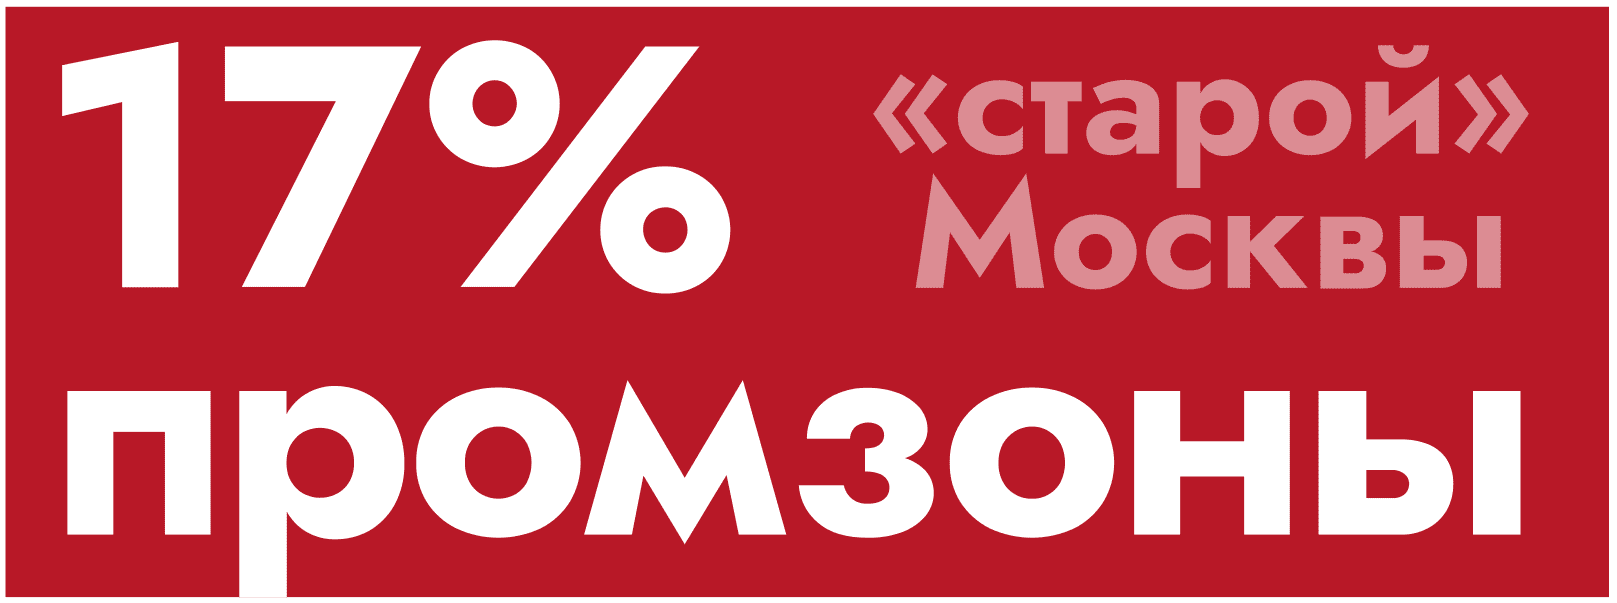 17% промзоны «старой» Москвы